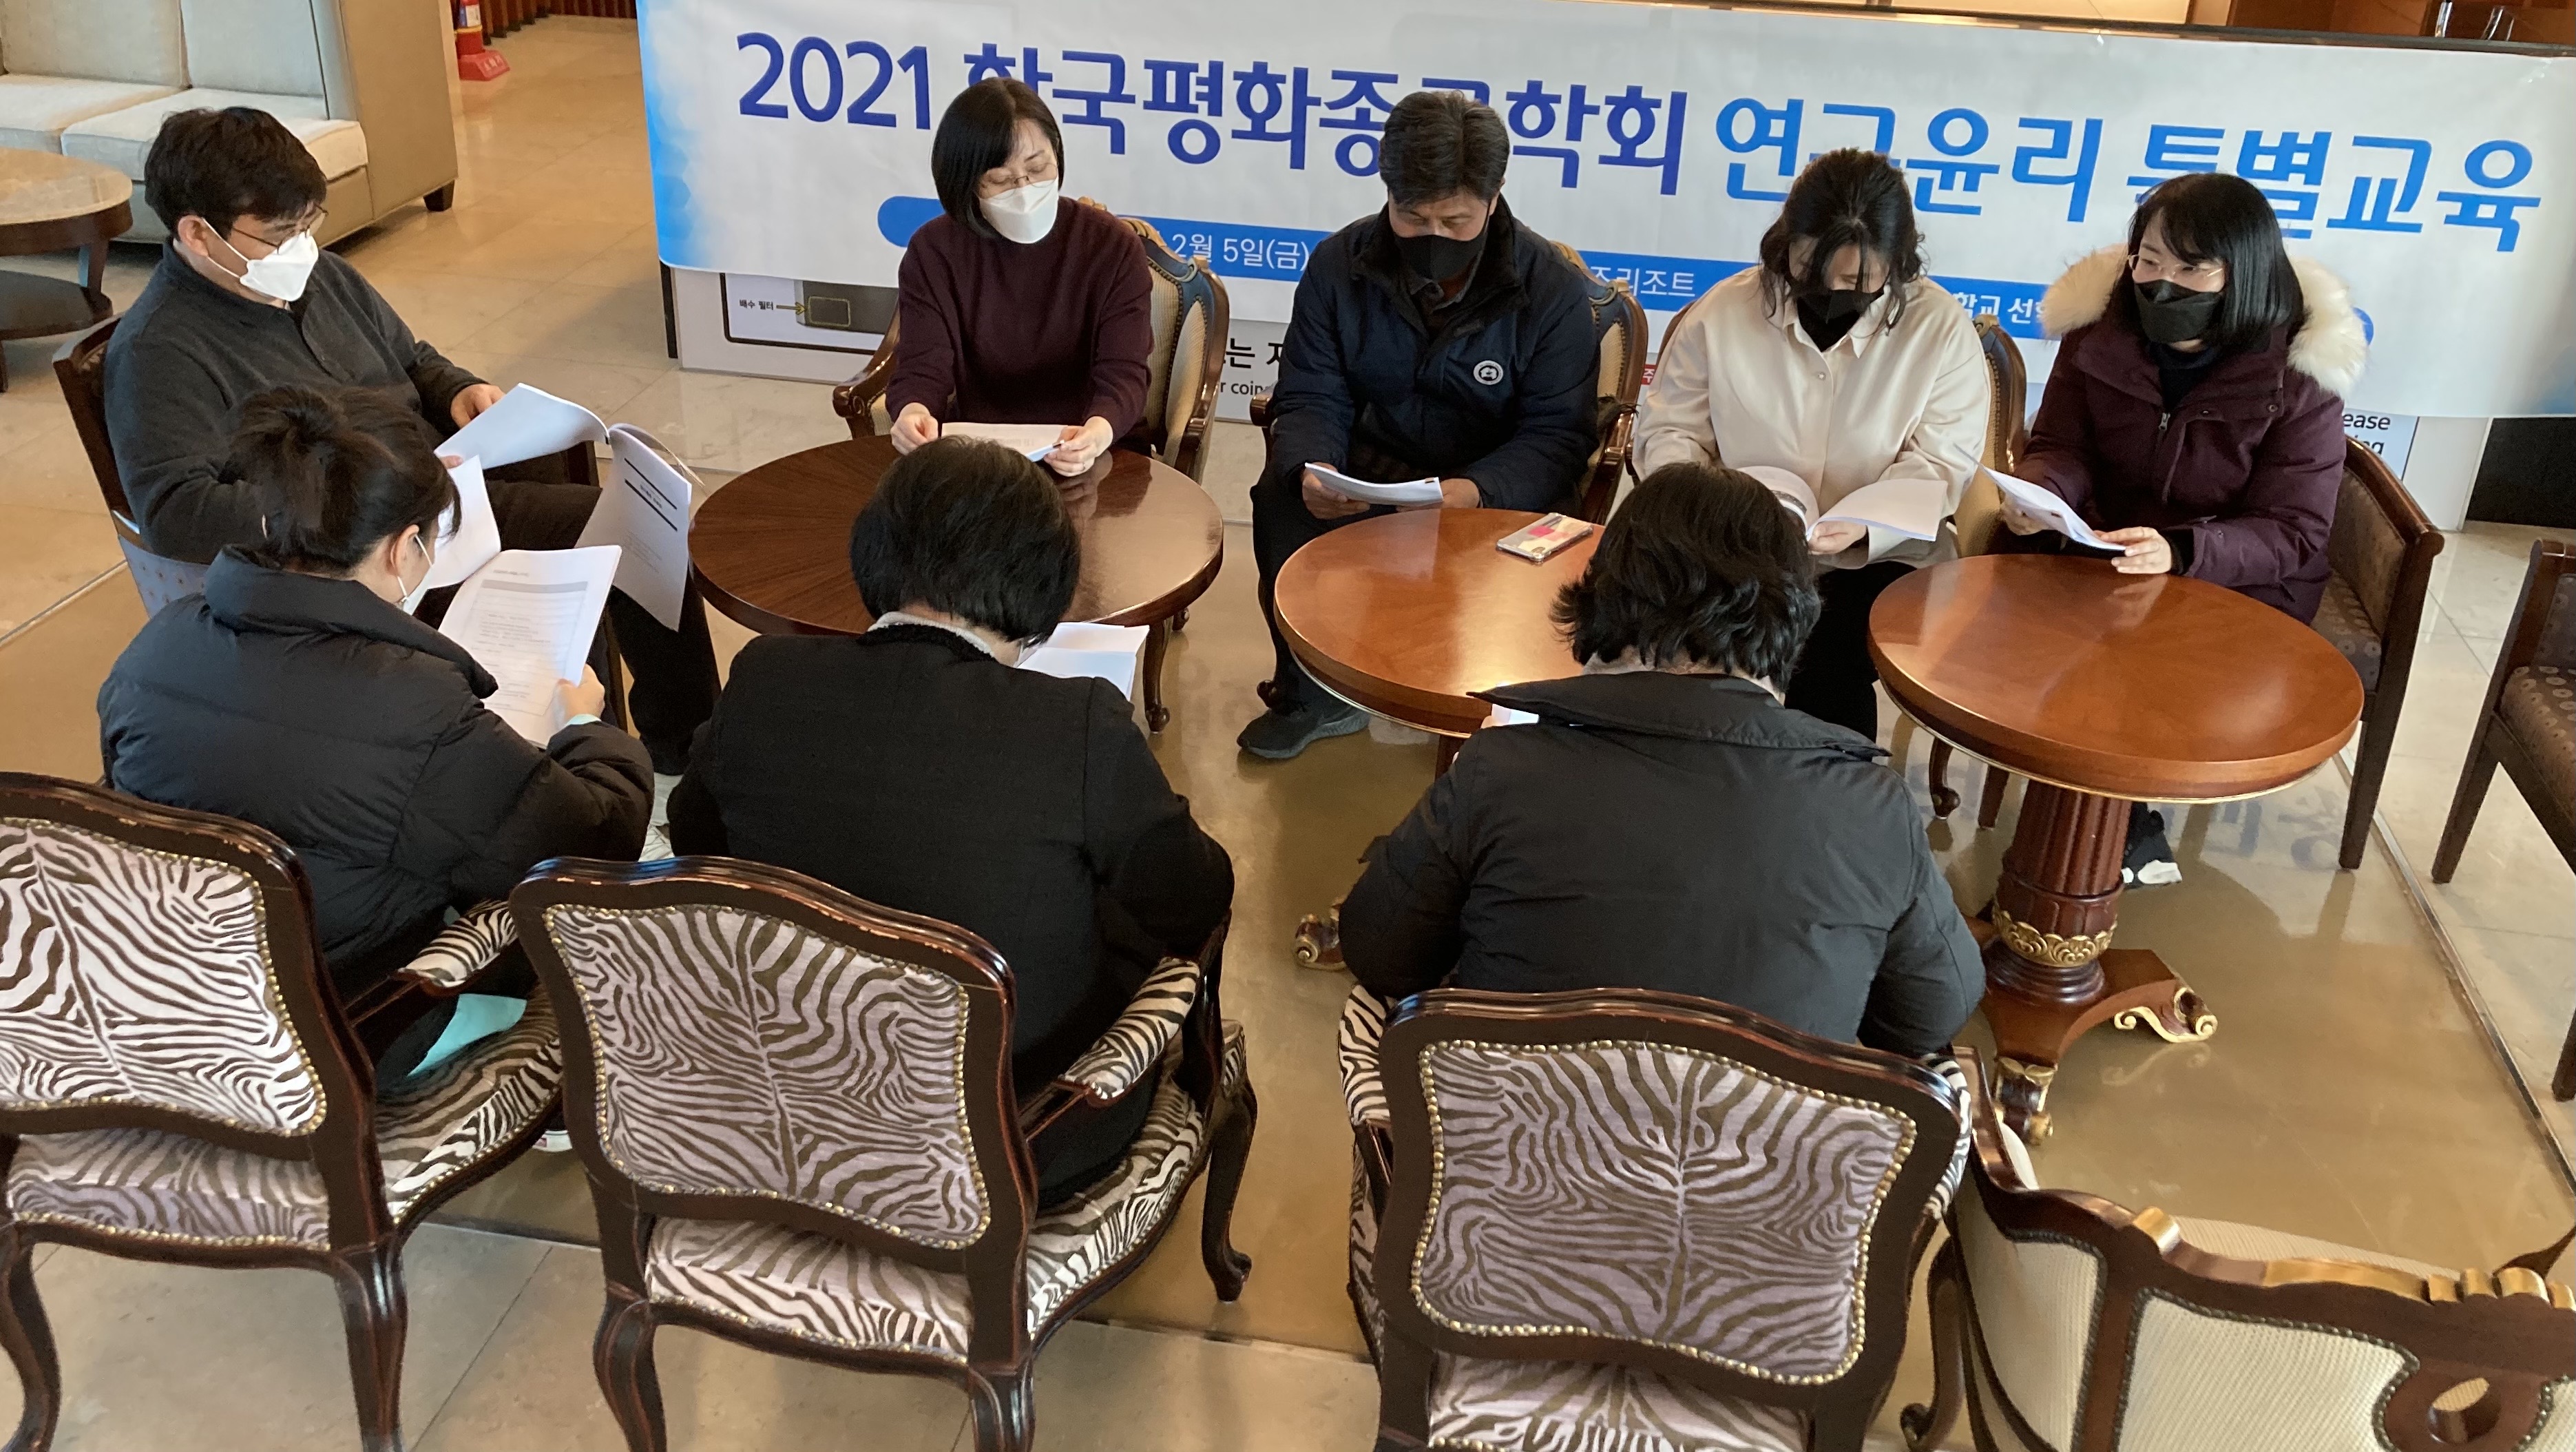 2021 한국평화종교학회 정기총회 및 제 1회 우수논문학술상 시상식